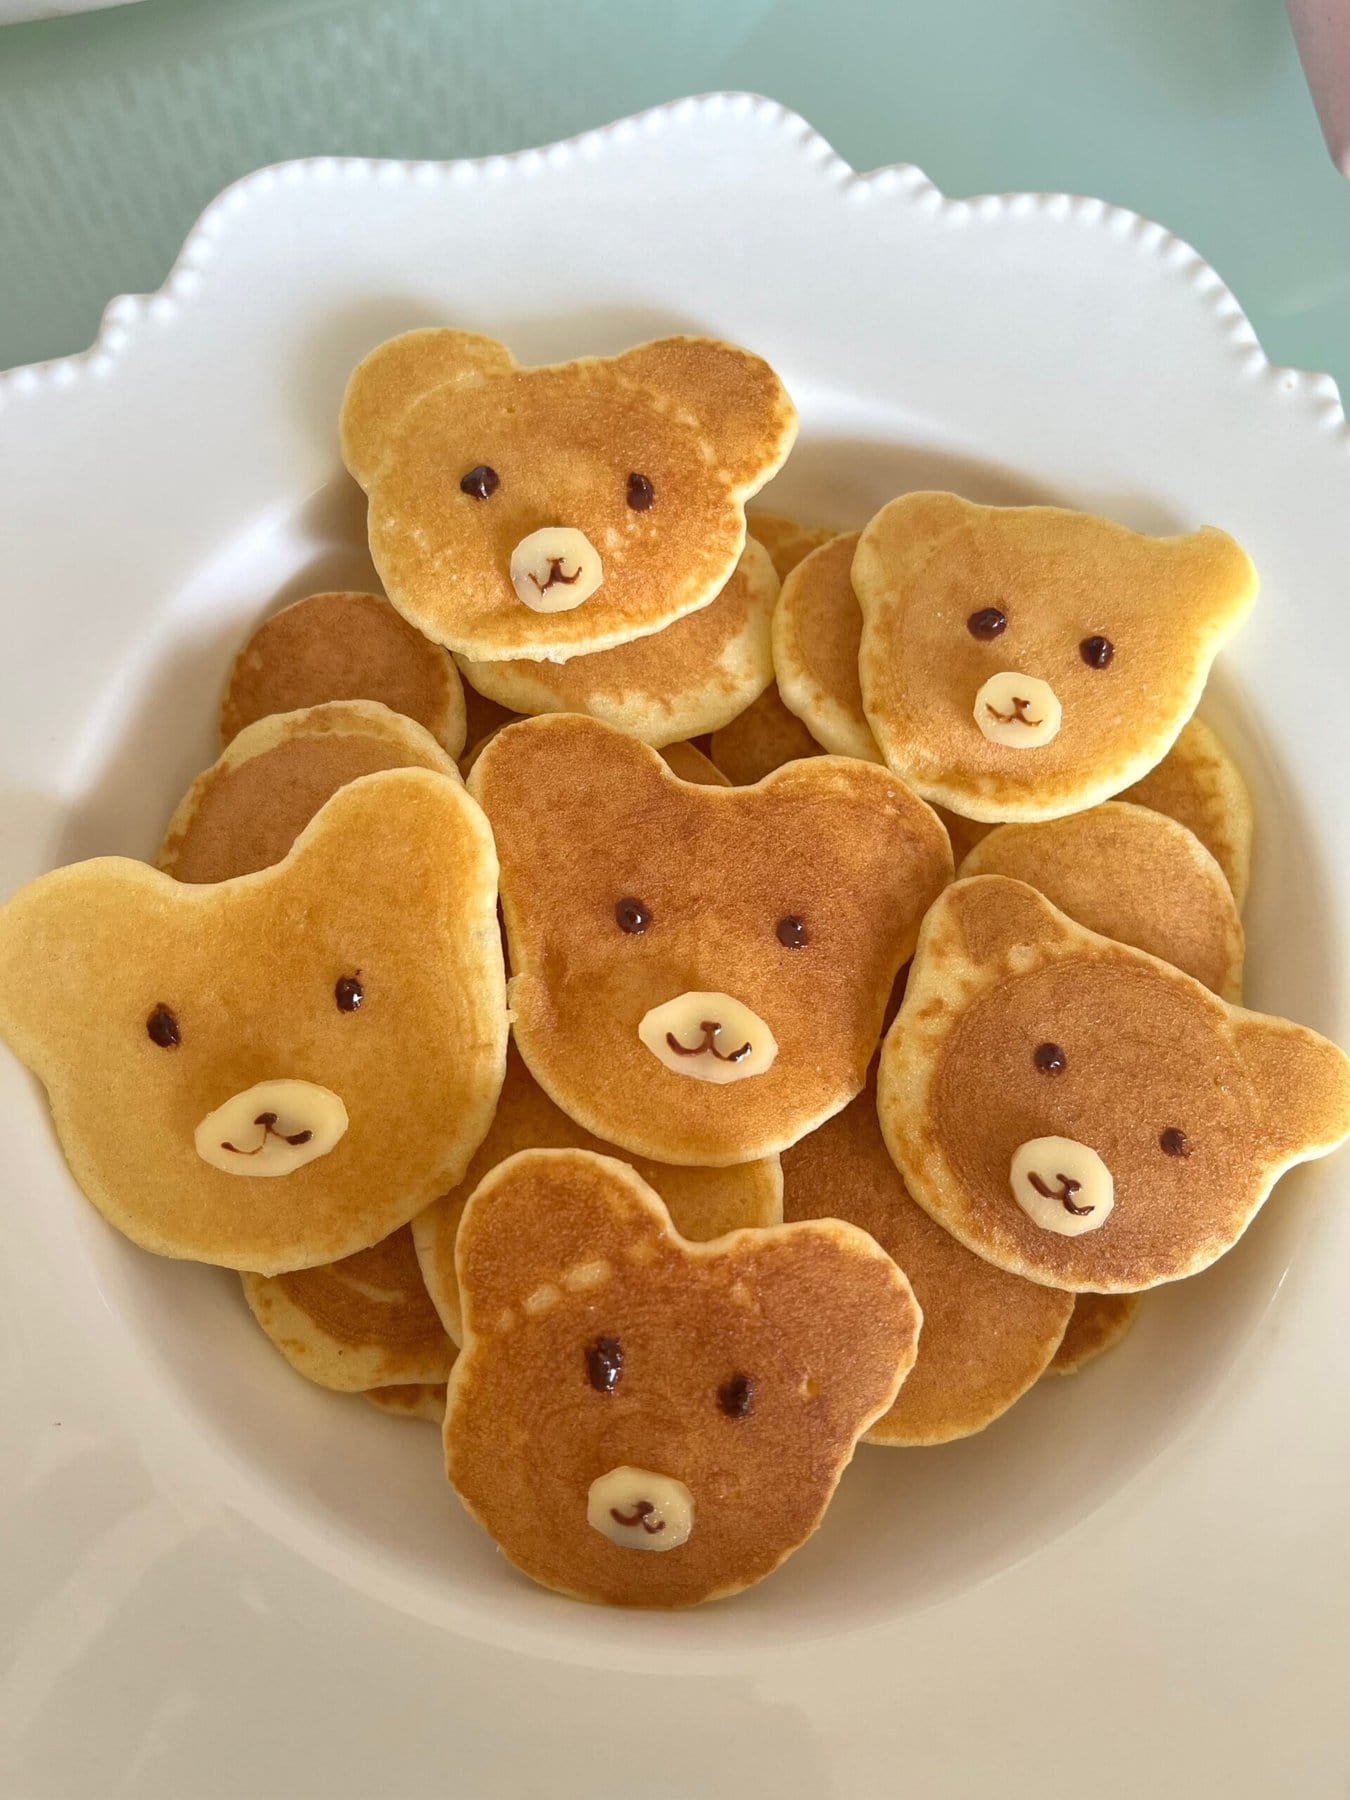 Teddy bear face pancakes on a plate